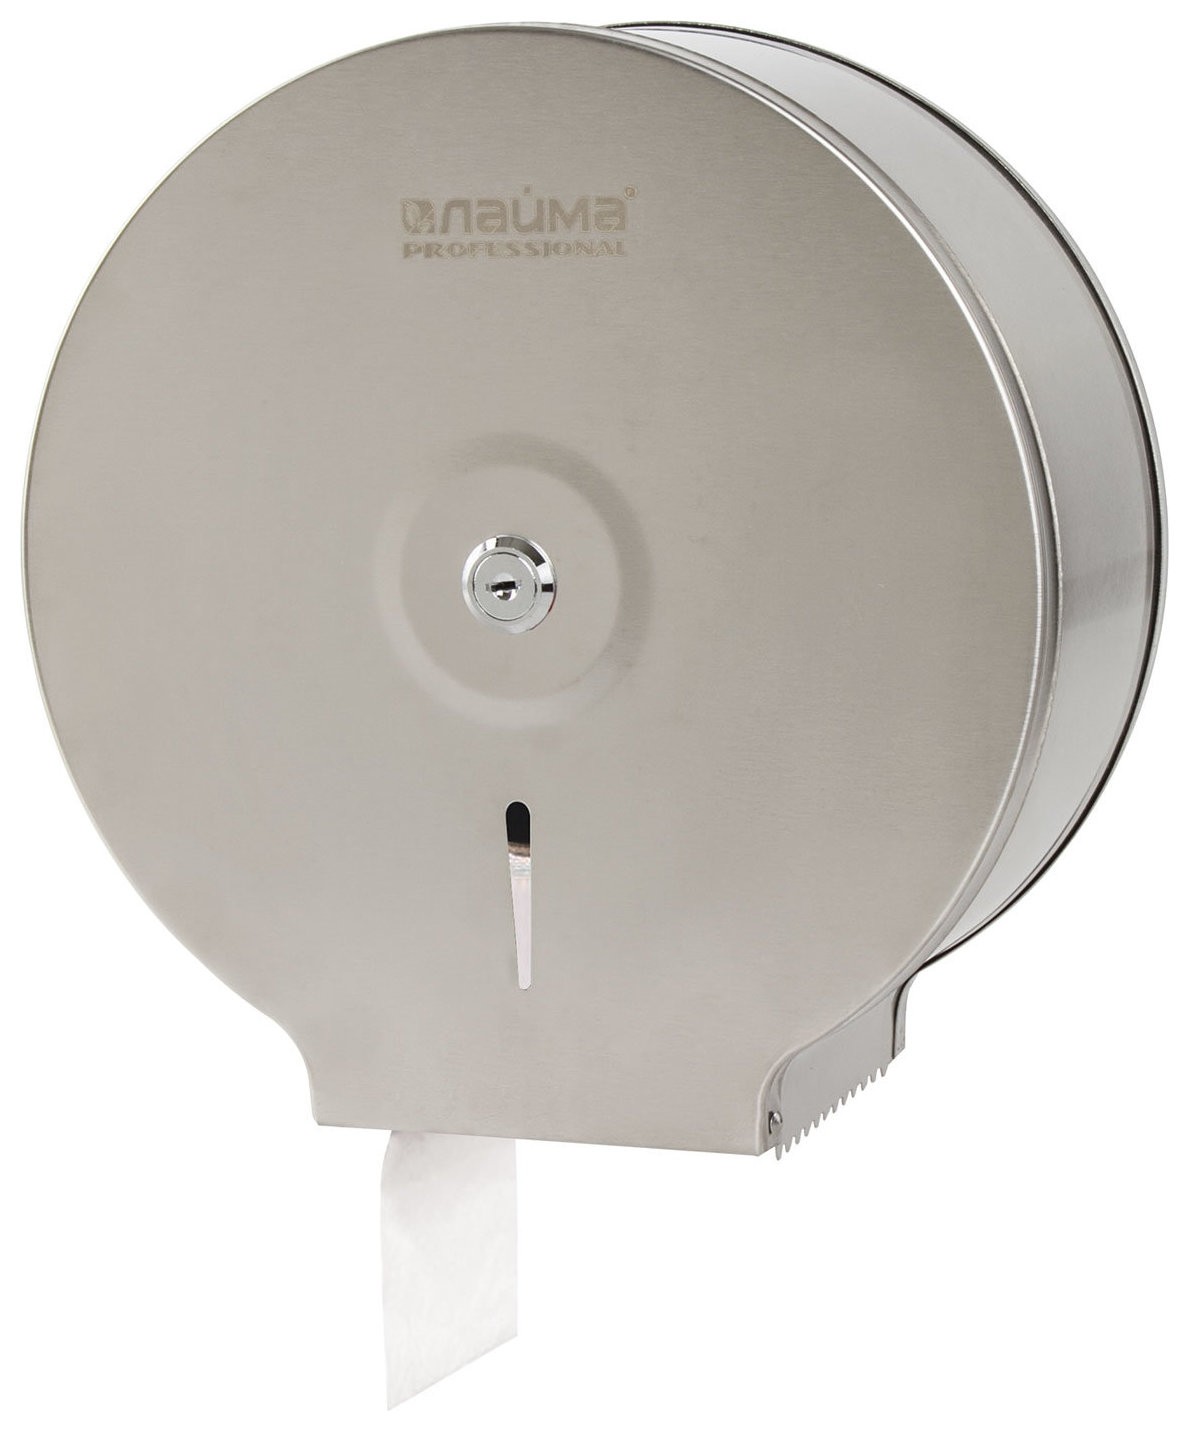 Диспенсер для туалетной бумаги лайма Professional Economy (Система T2), малый, нержавеющая сталь, матовый, 605048